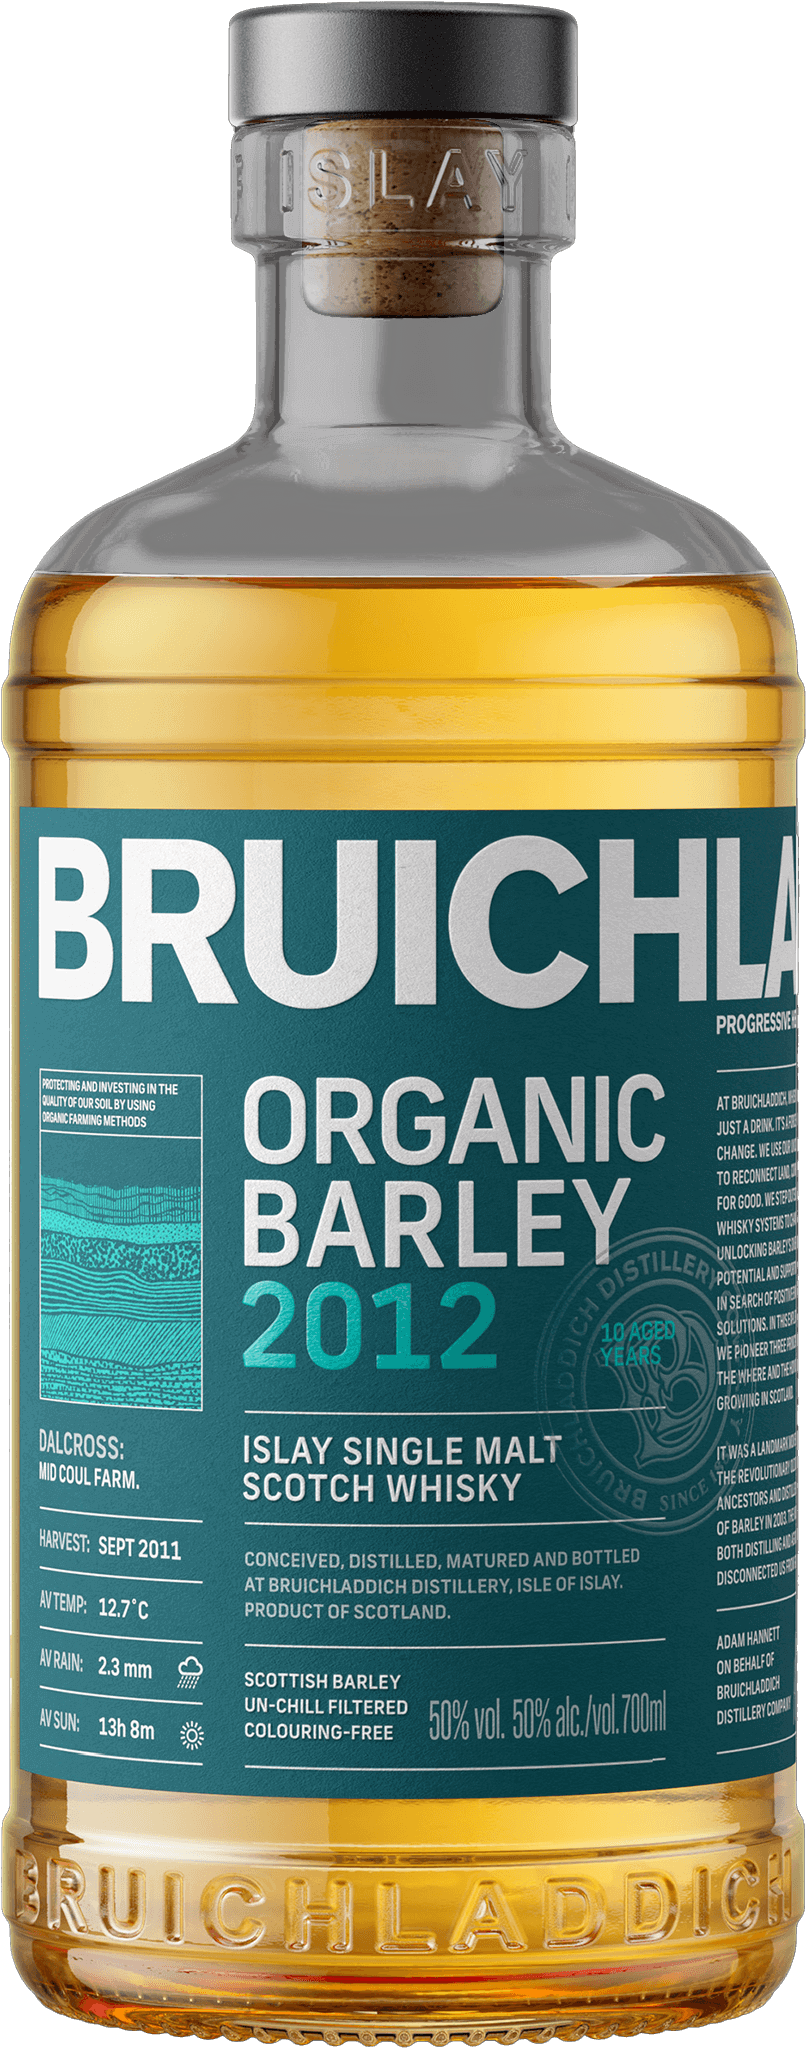 Bruichladdich Organic Barley 2012